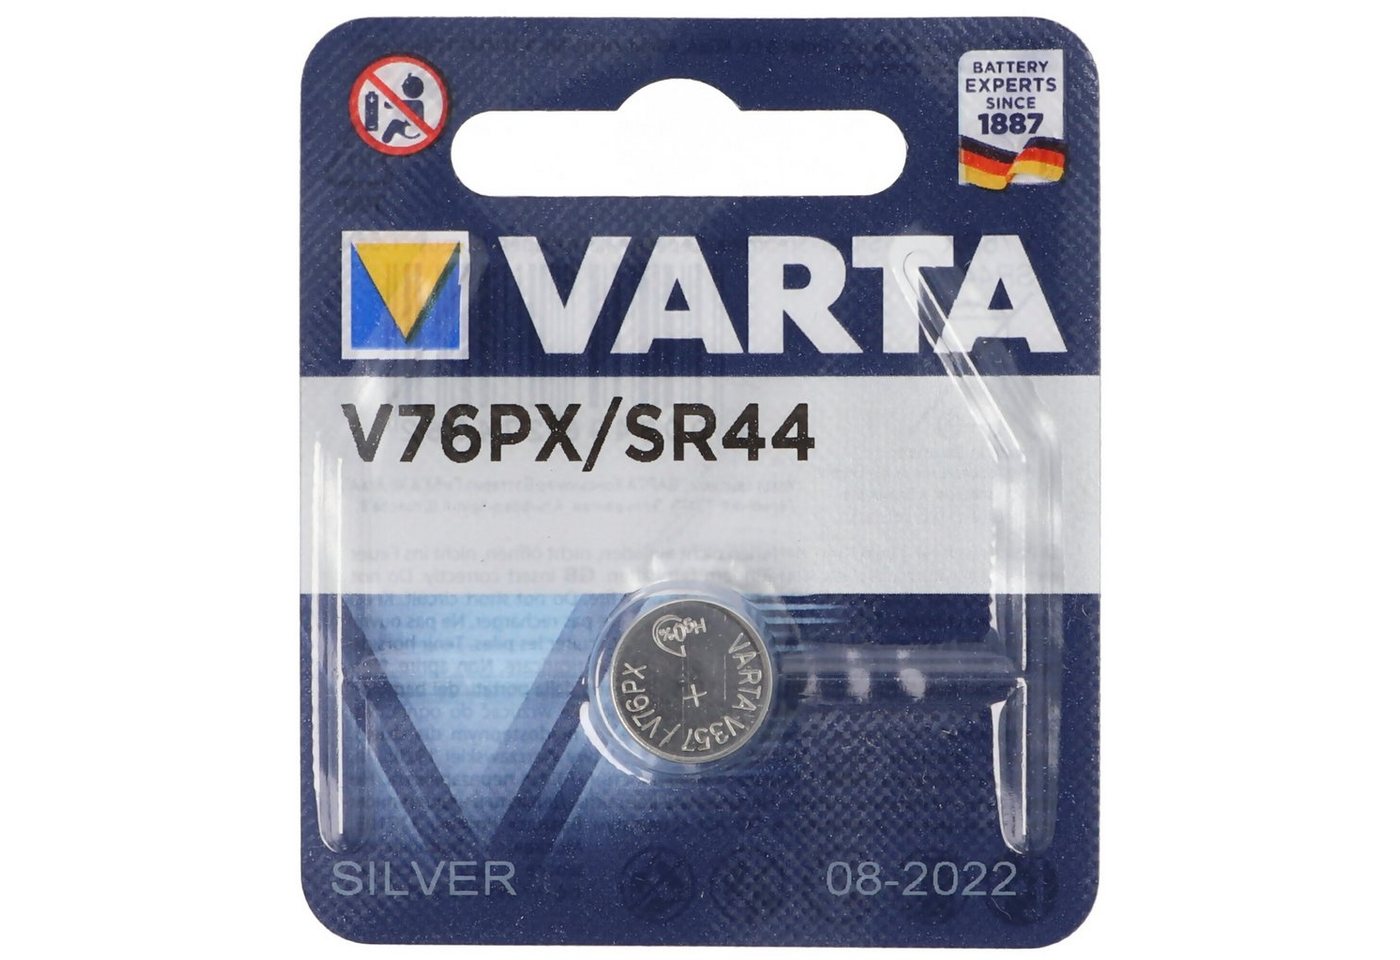 VARTA Varta V76PX Alkaline Batterie, 10L14, 357, SR44, GS13, 5,4 x 11,6 mm Fotobatterie, (1,6 V) von VARTA